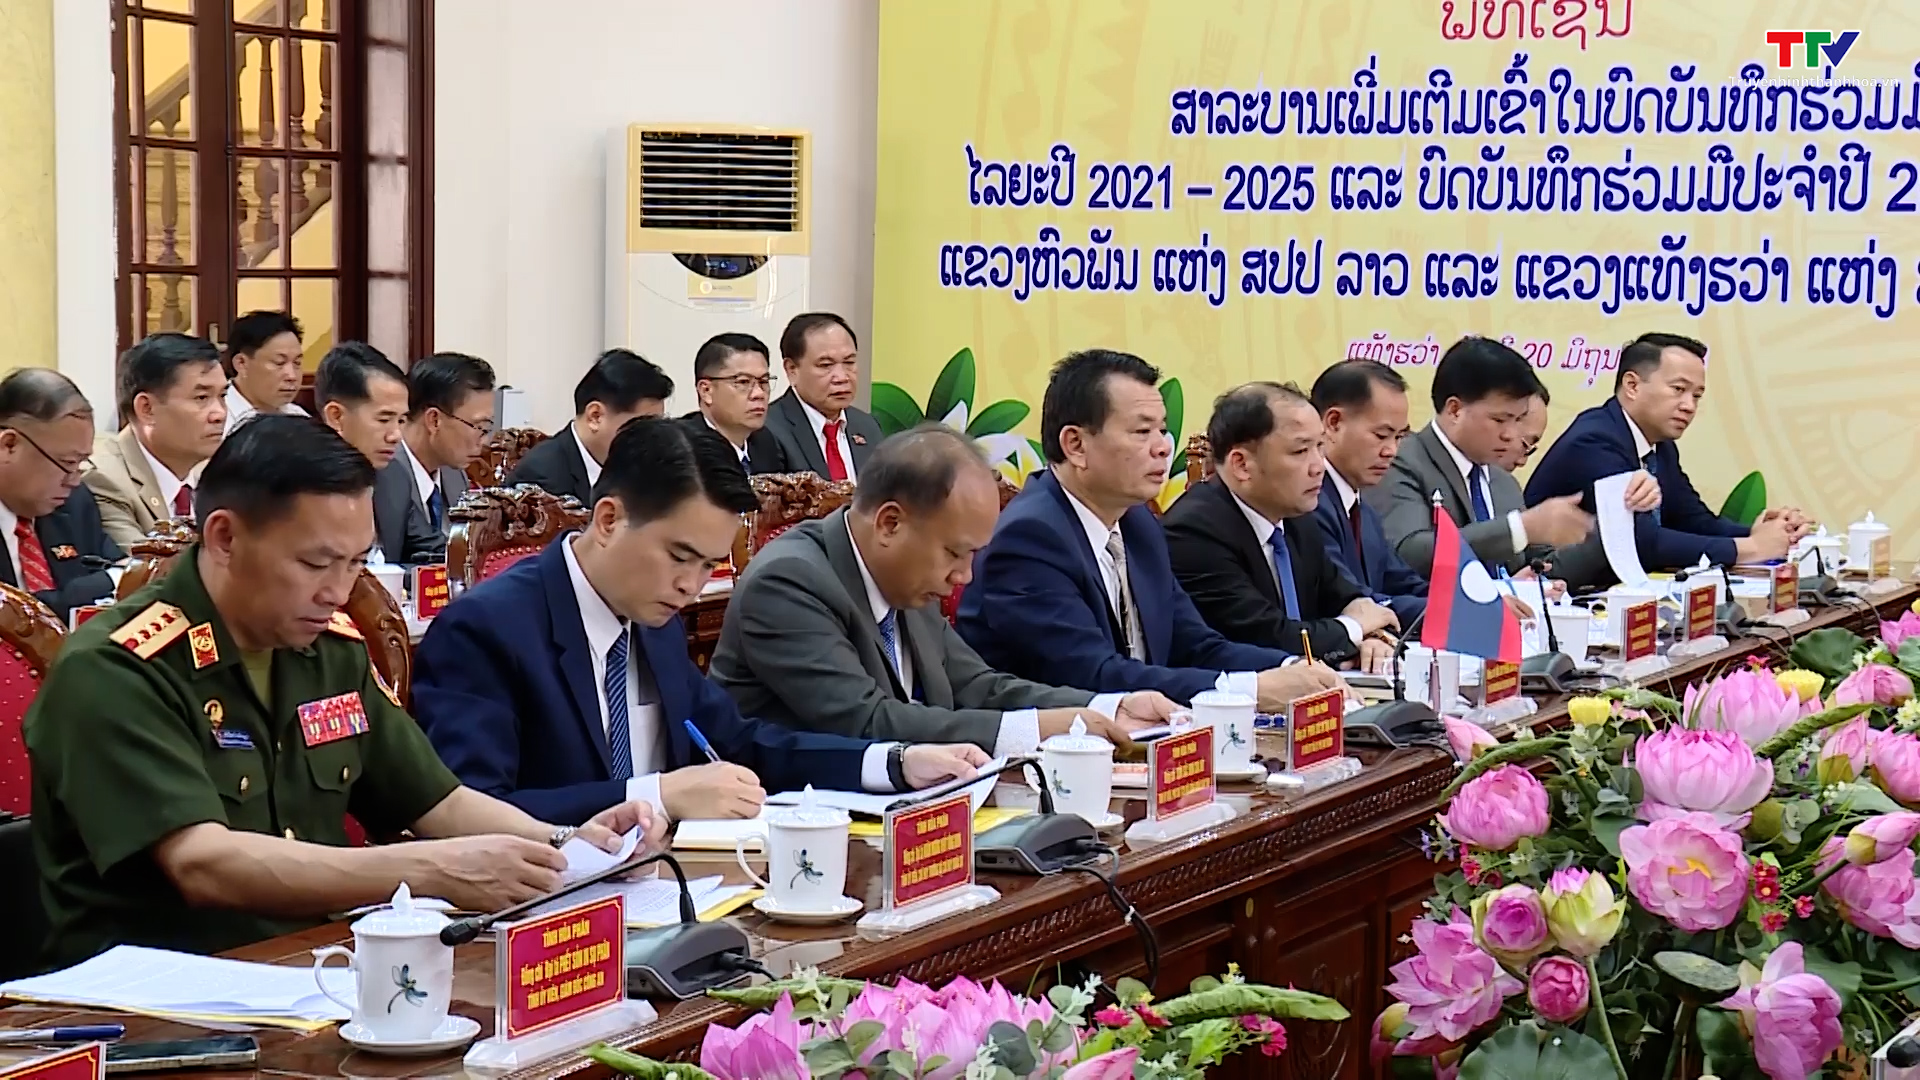 Thanh Hóa – Hủa Phăn hội đàm và ký kết thỏa thuận hợp tác năm 2023 - Ảnh 4.